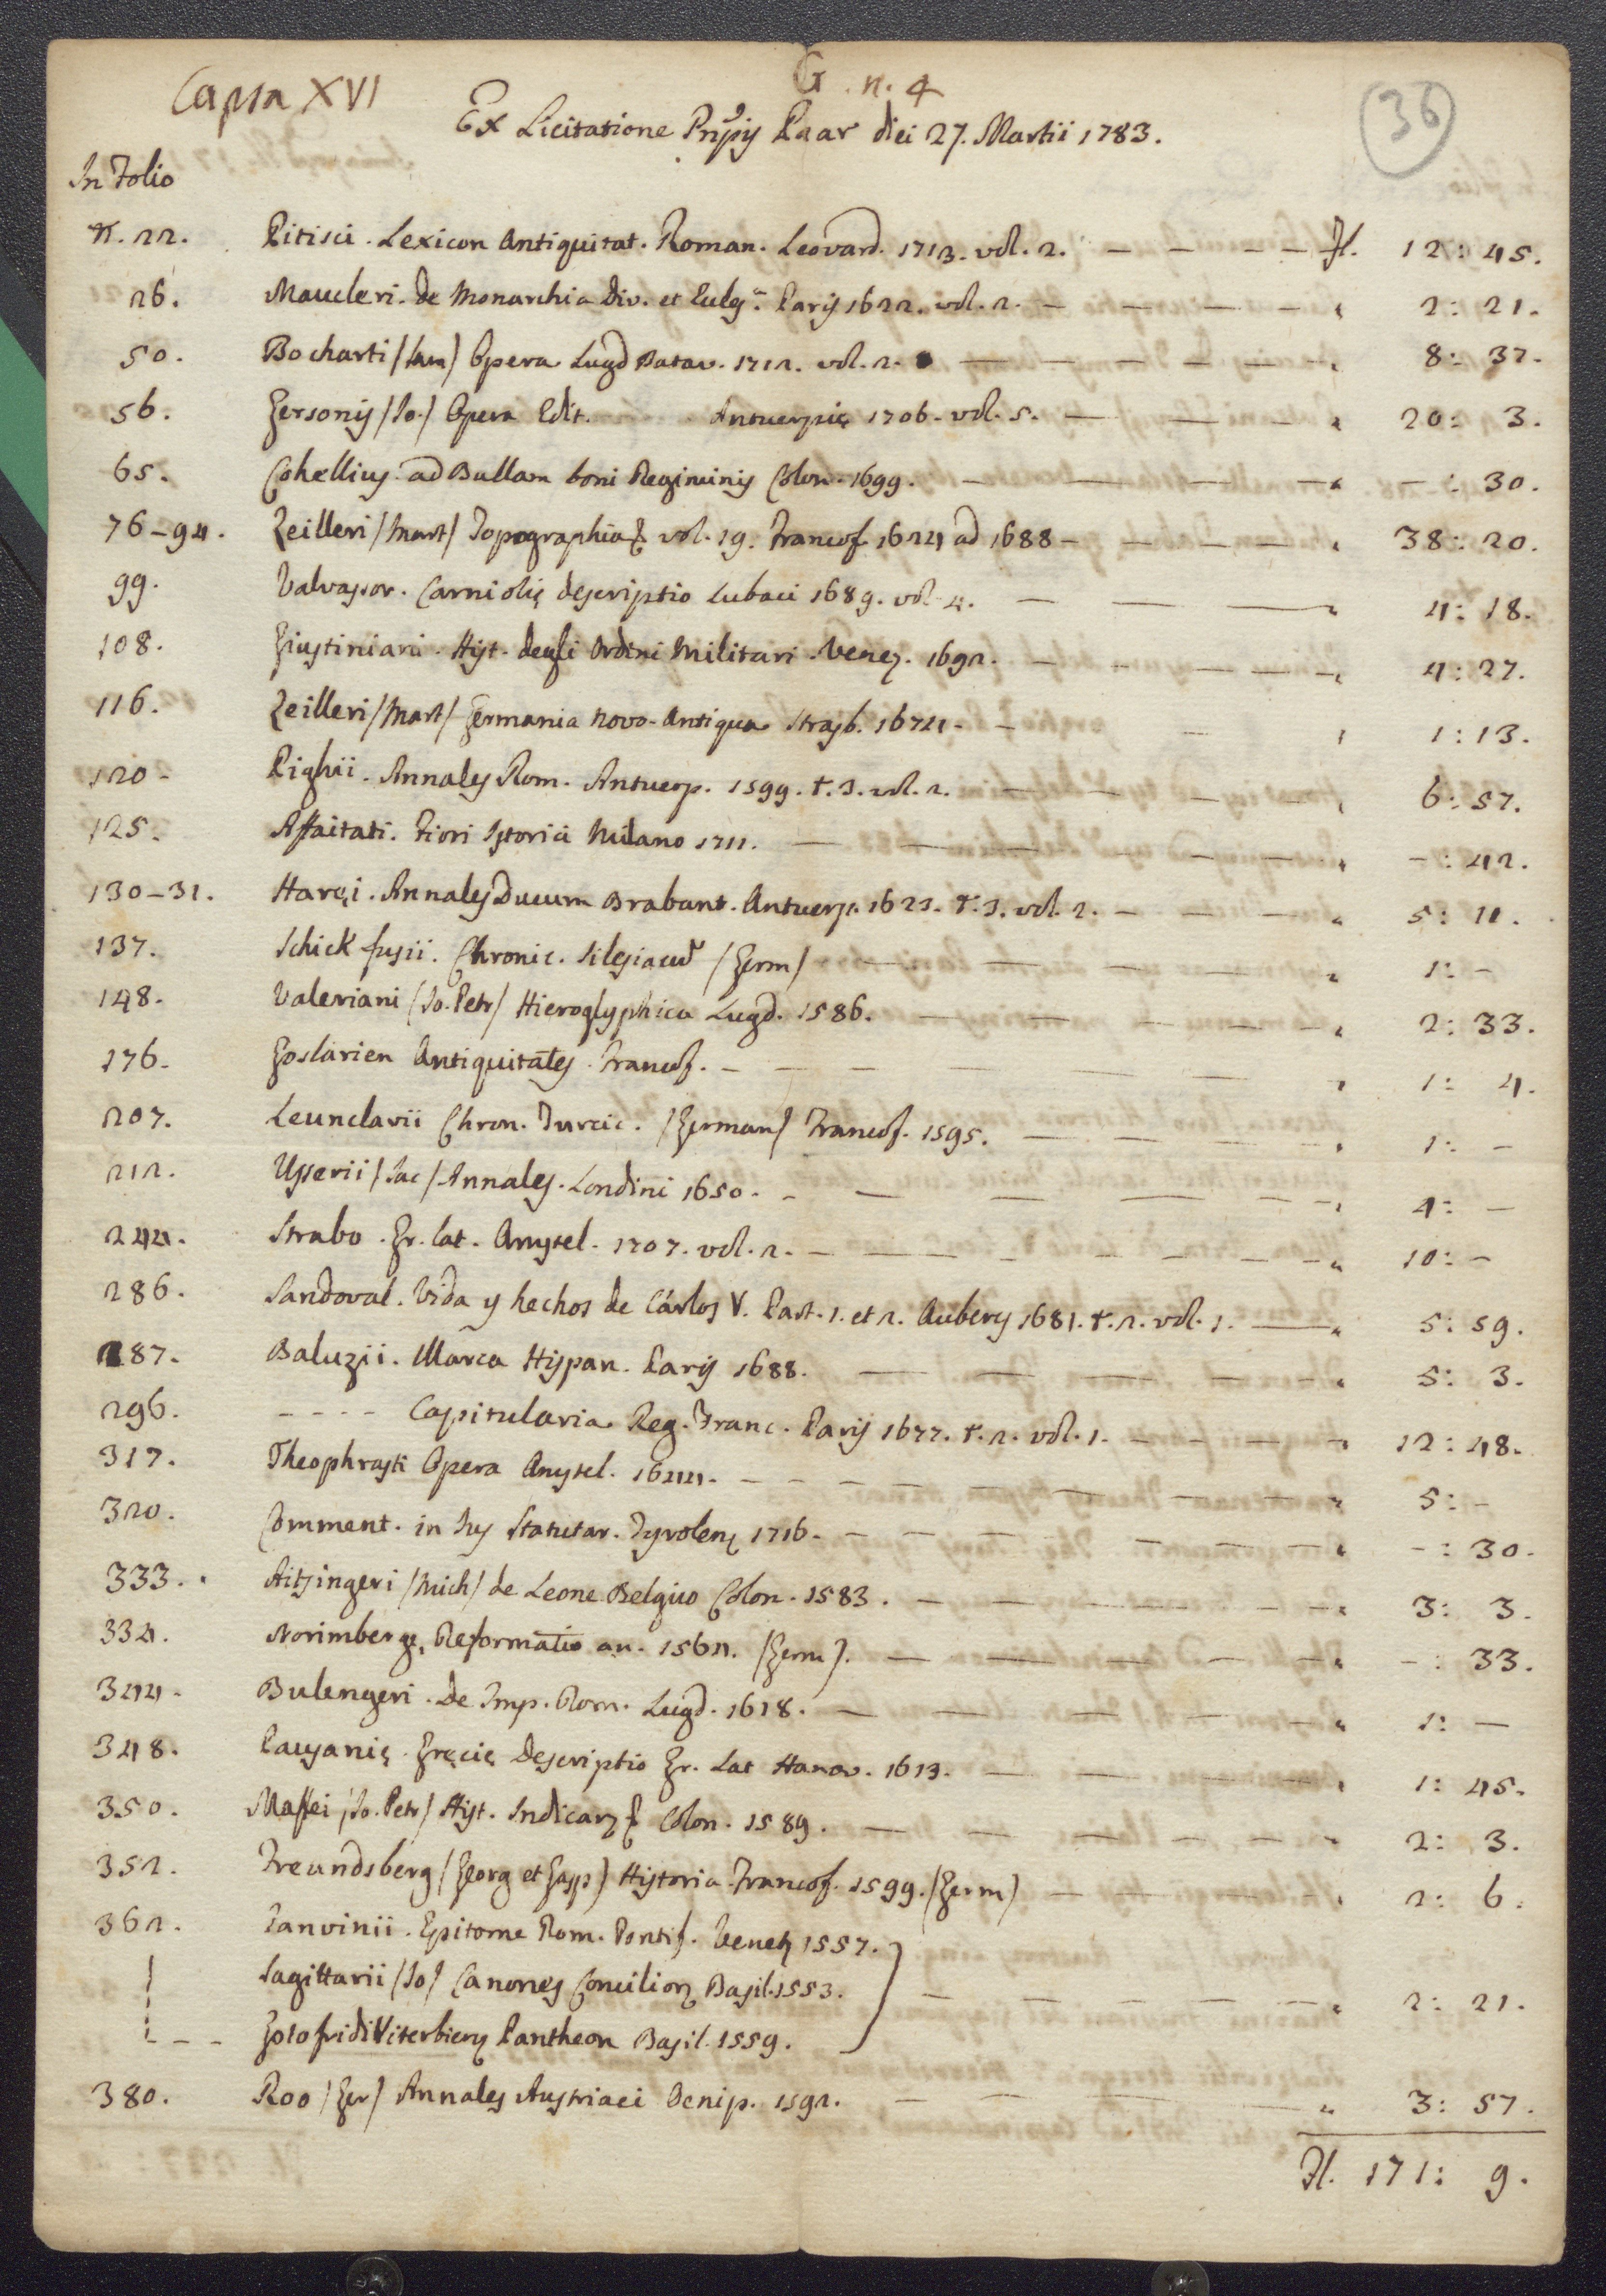 Wenzel Johann Josef von Paar herceg könyvtárának 1783. március 27-én Bécsben tartott licitálásán beszerzett könyvek listája